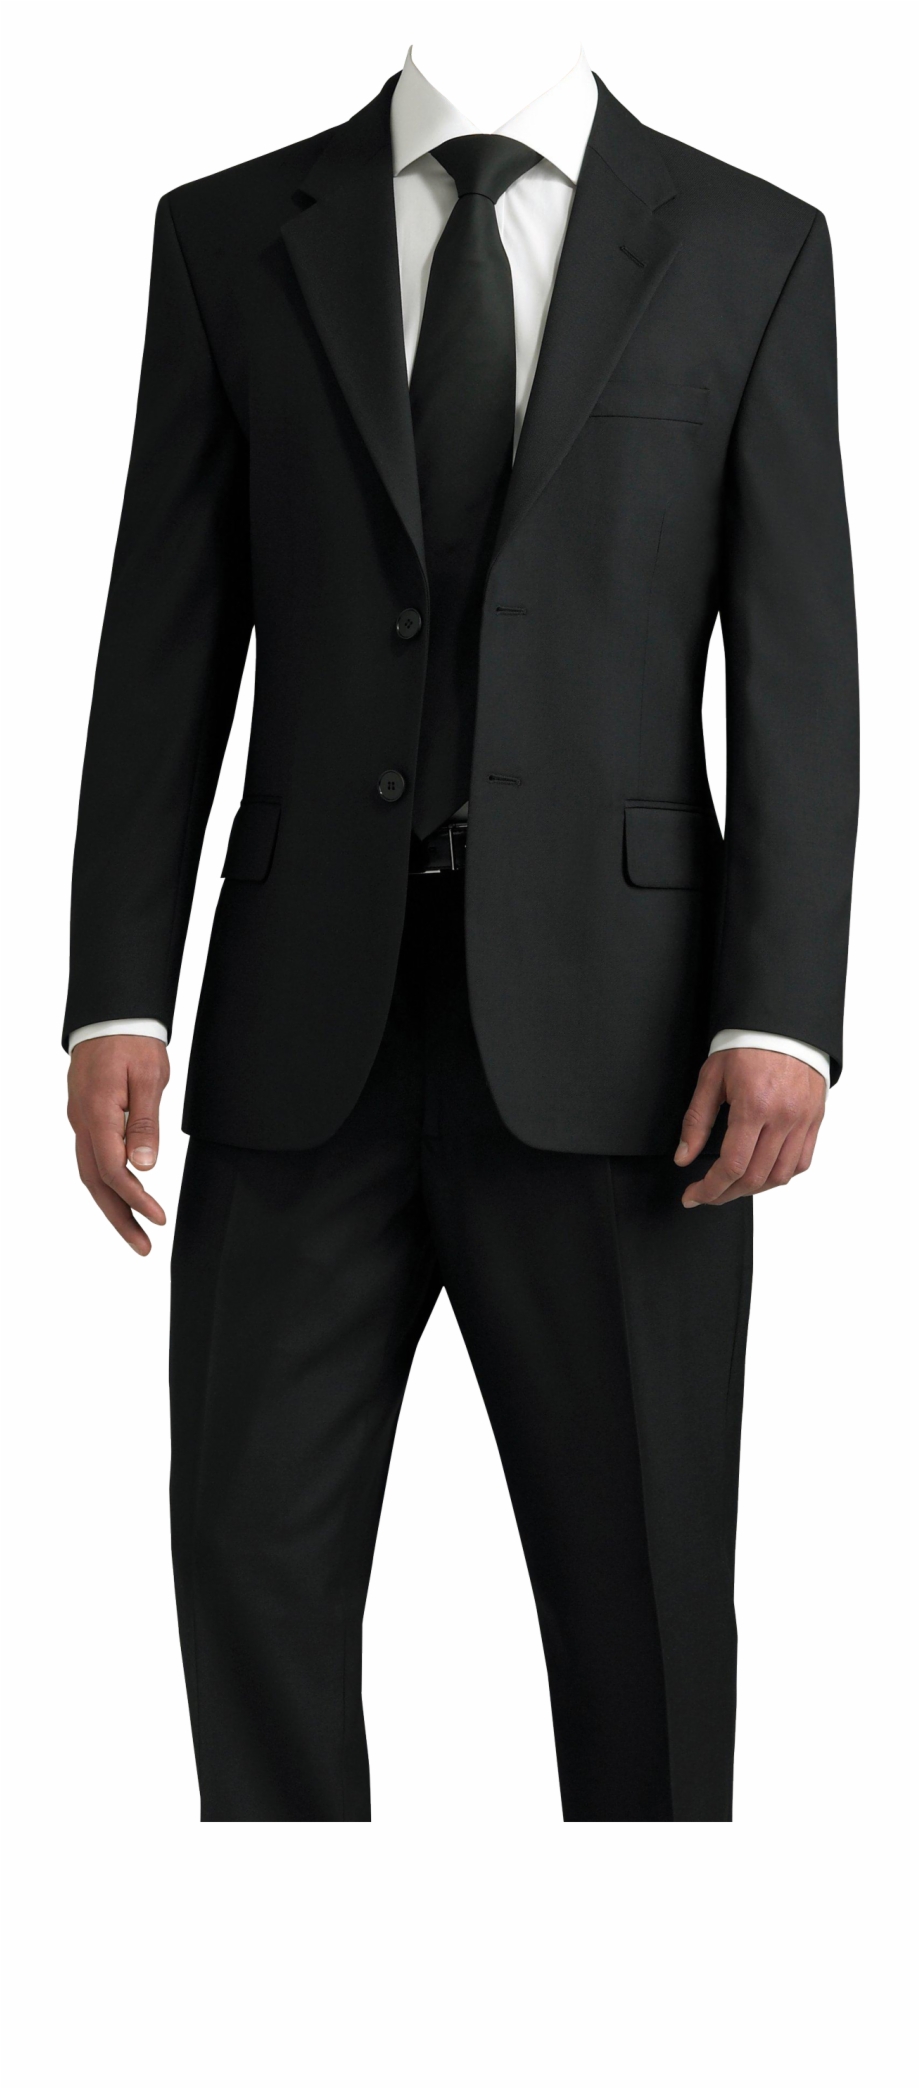 Suit Png Transparent Image Suit Photo For Photoshop